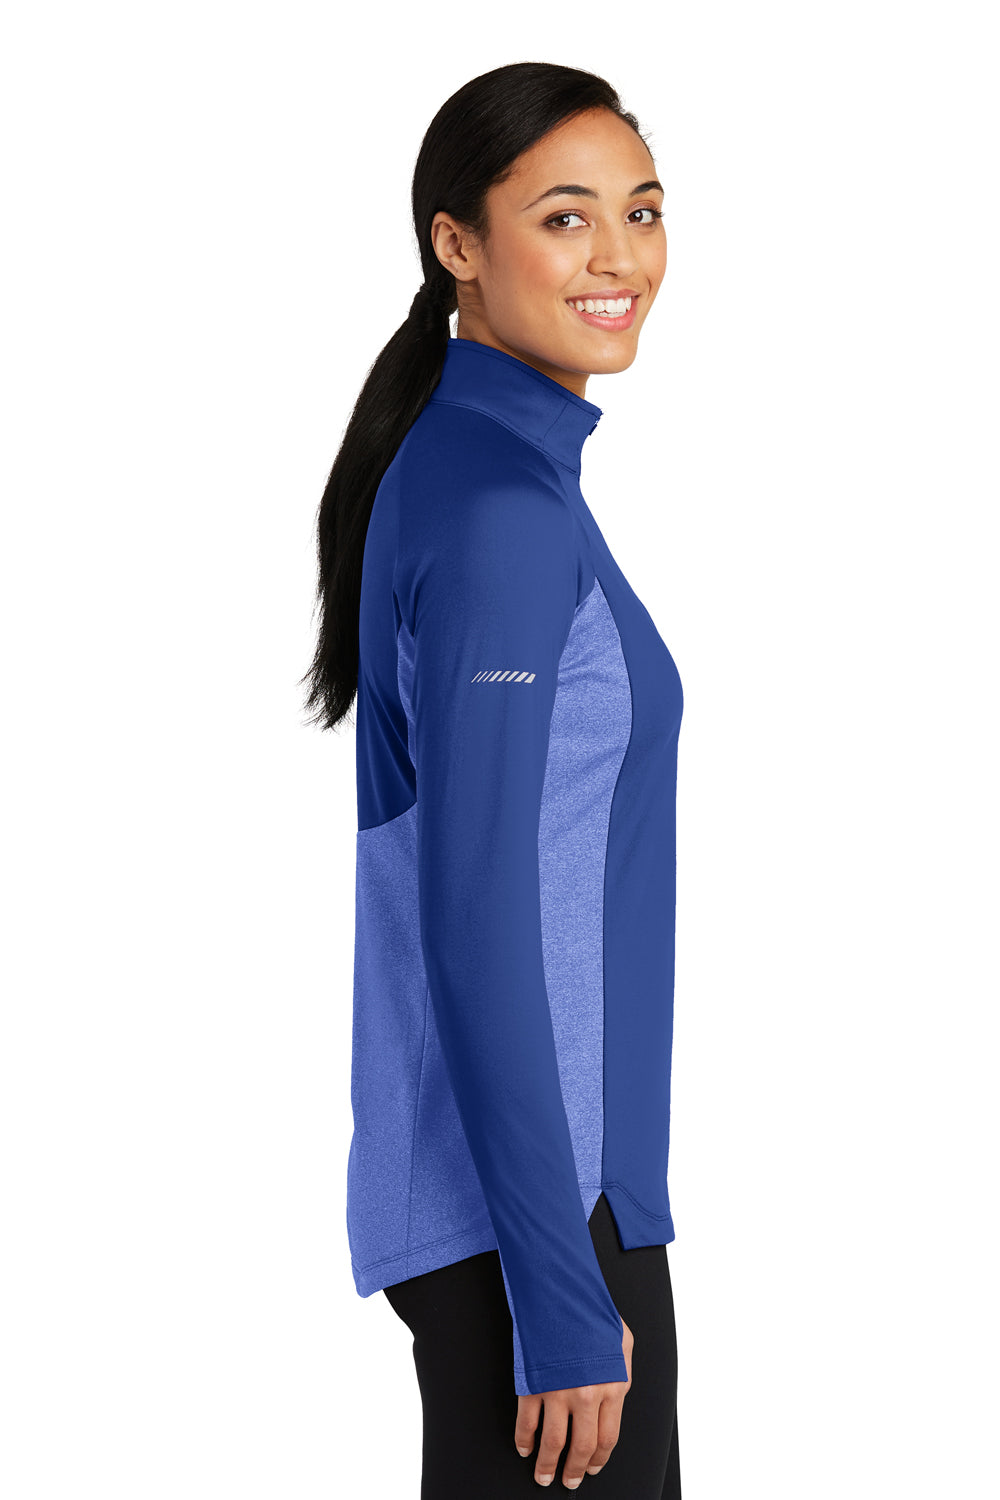 Sport-Tek LST854 Womens Sport-Wick Moisture Wicking 1/4 Zip Sweatshirt Royal Blue/Heather Royal Blue Side